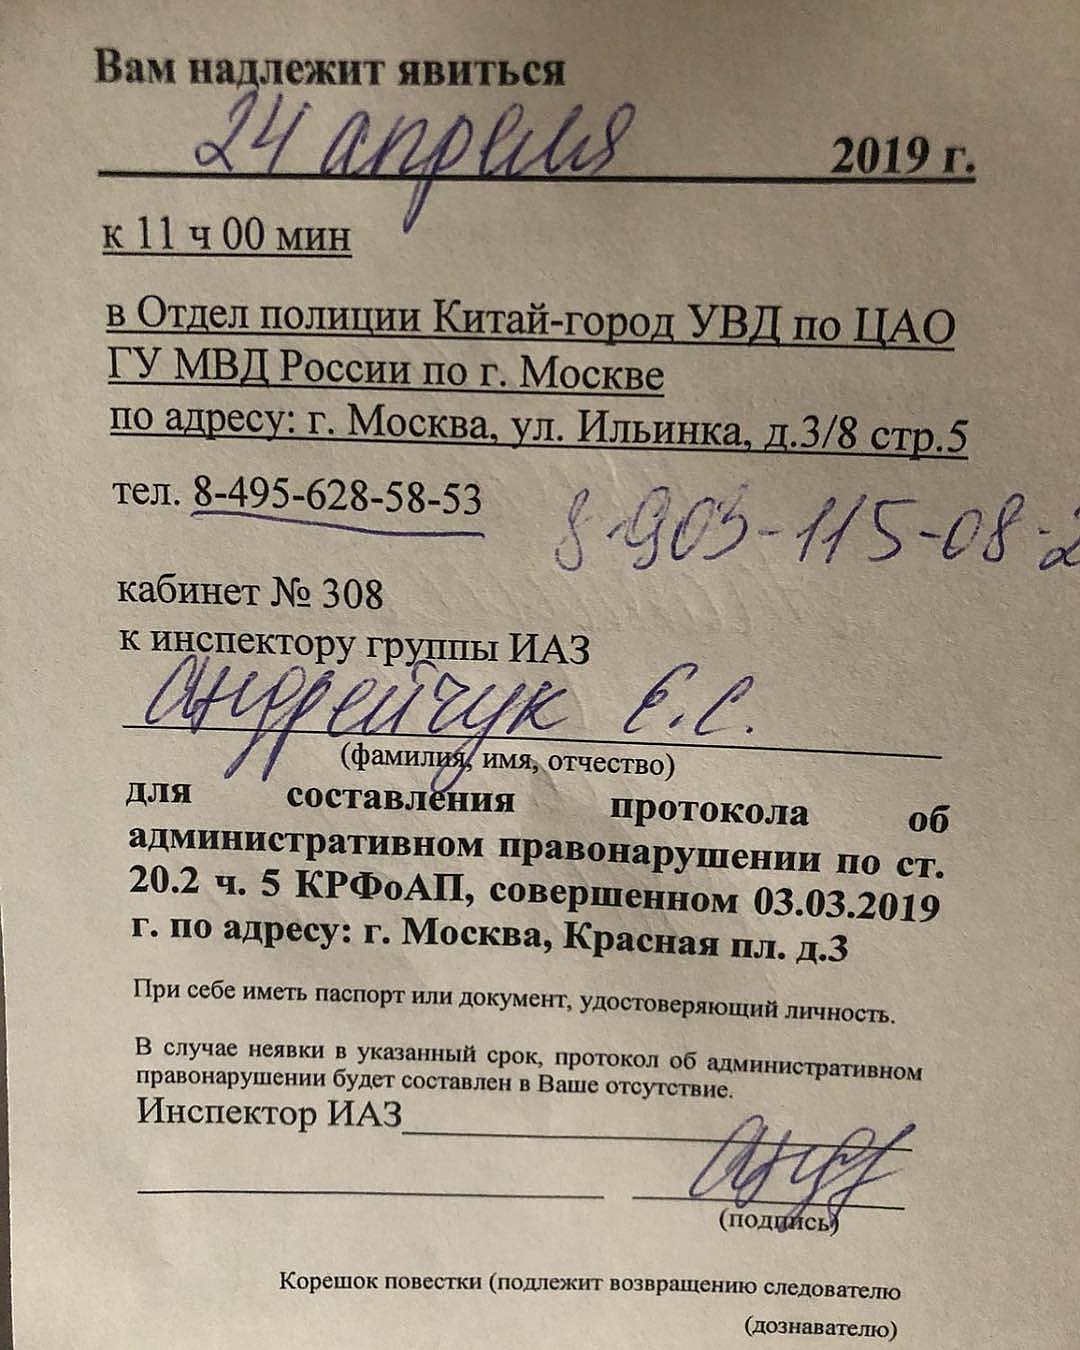 Сергея Зверева вызвали в полицию за одиночный пикет в защиту Байкала